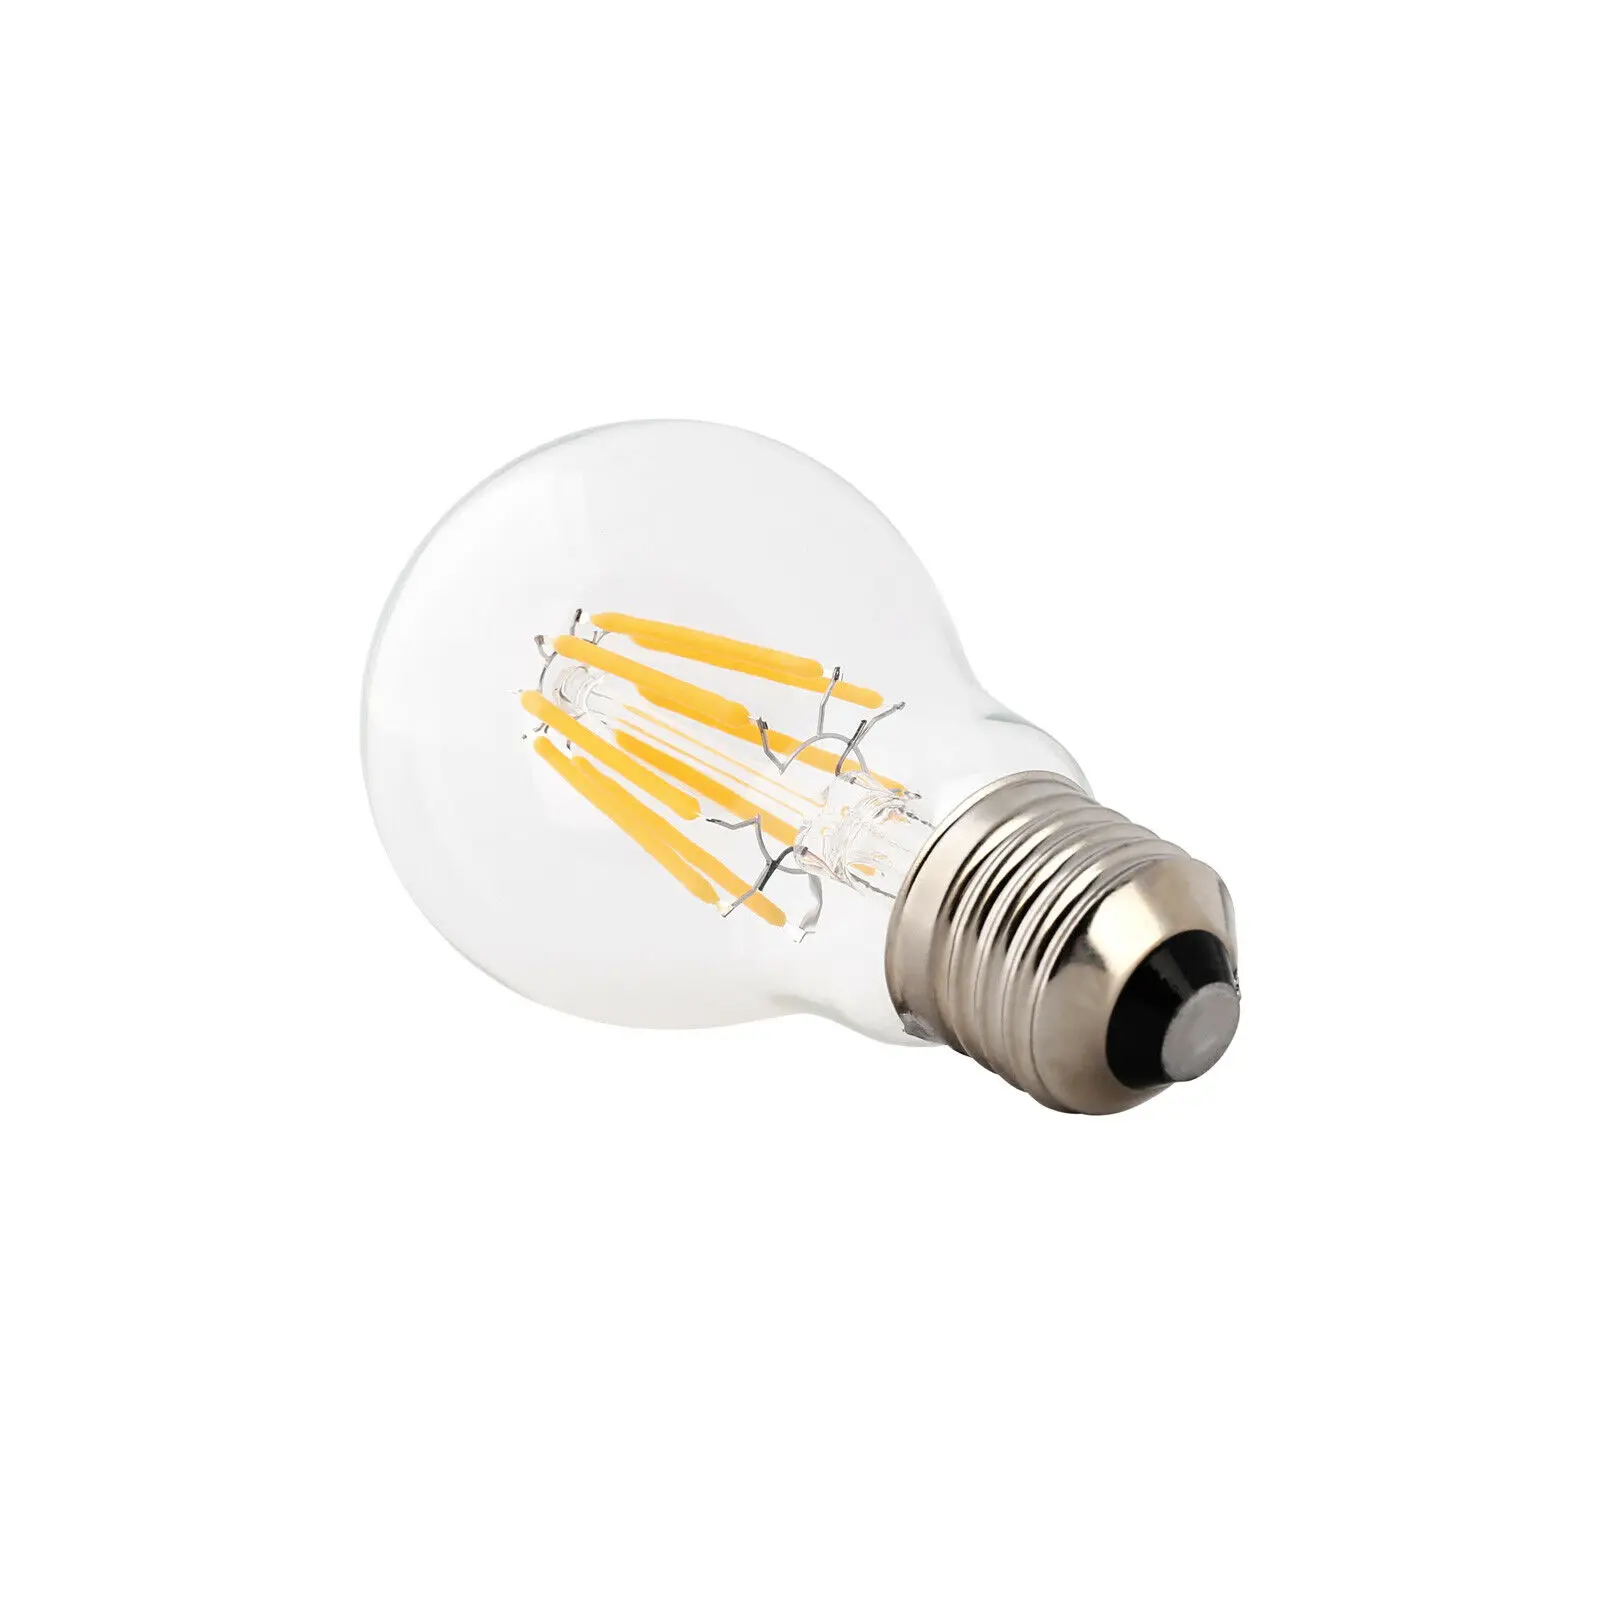 Винтажный светодиодный светильник Эдисона E27 B22 2 Вт 4 Вт 6 Вт G45, 220 В 20 Вт 40 Вт, Эквивалент лампы накаливания из прозрачного стекла